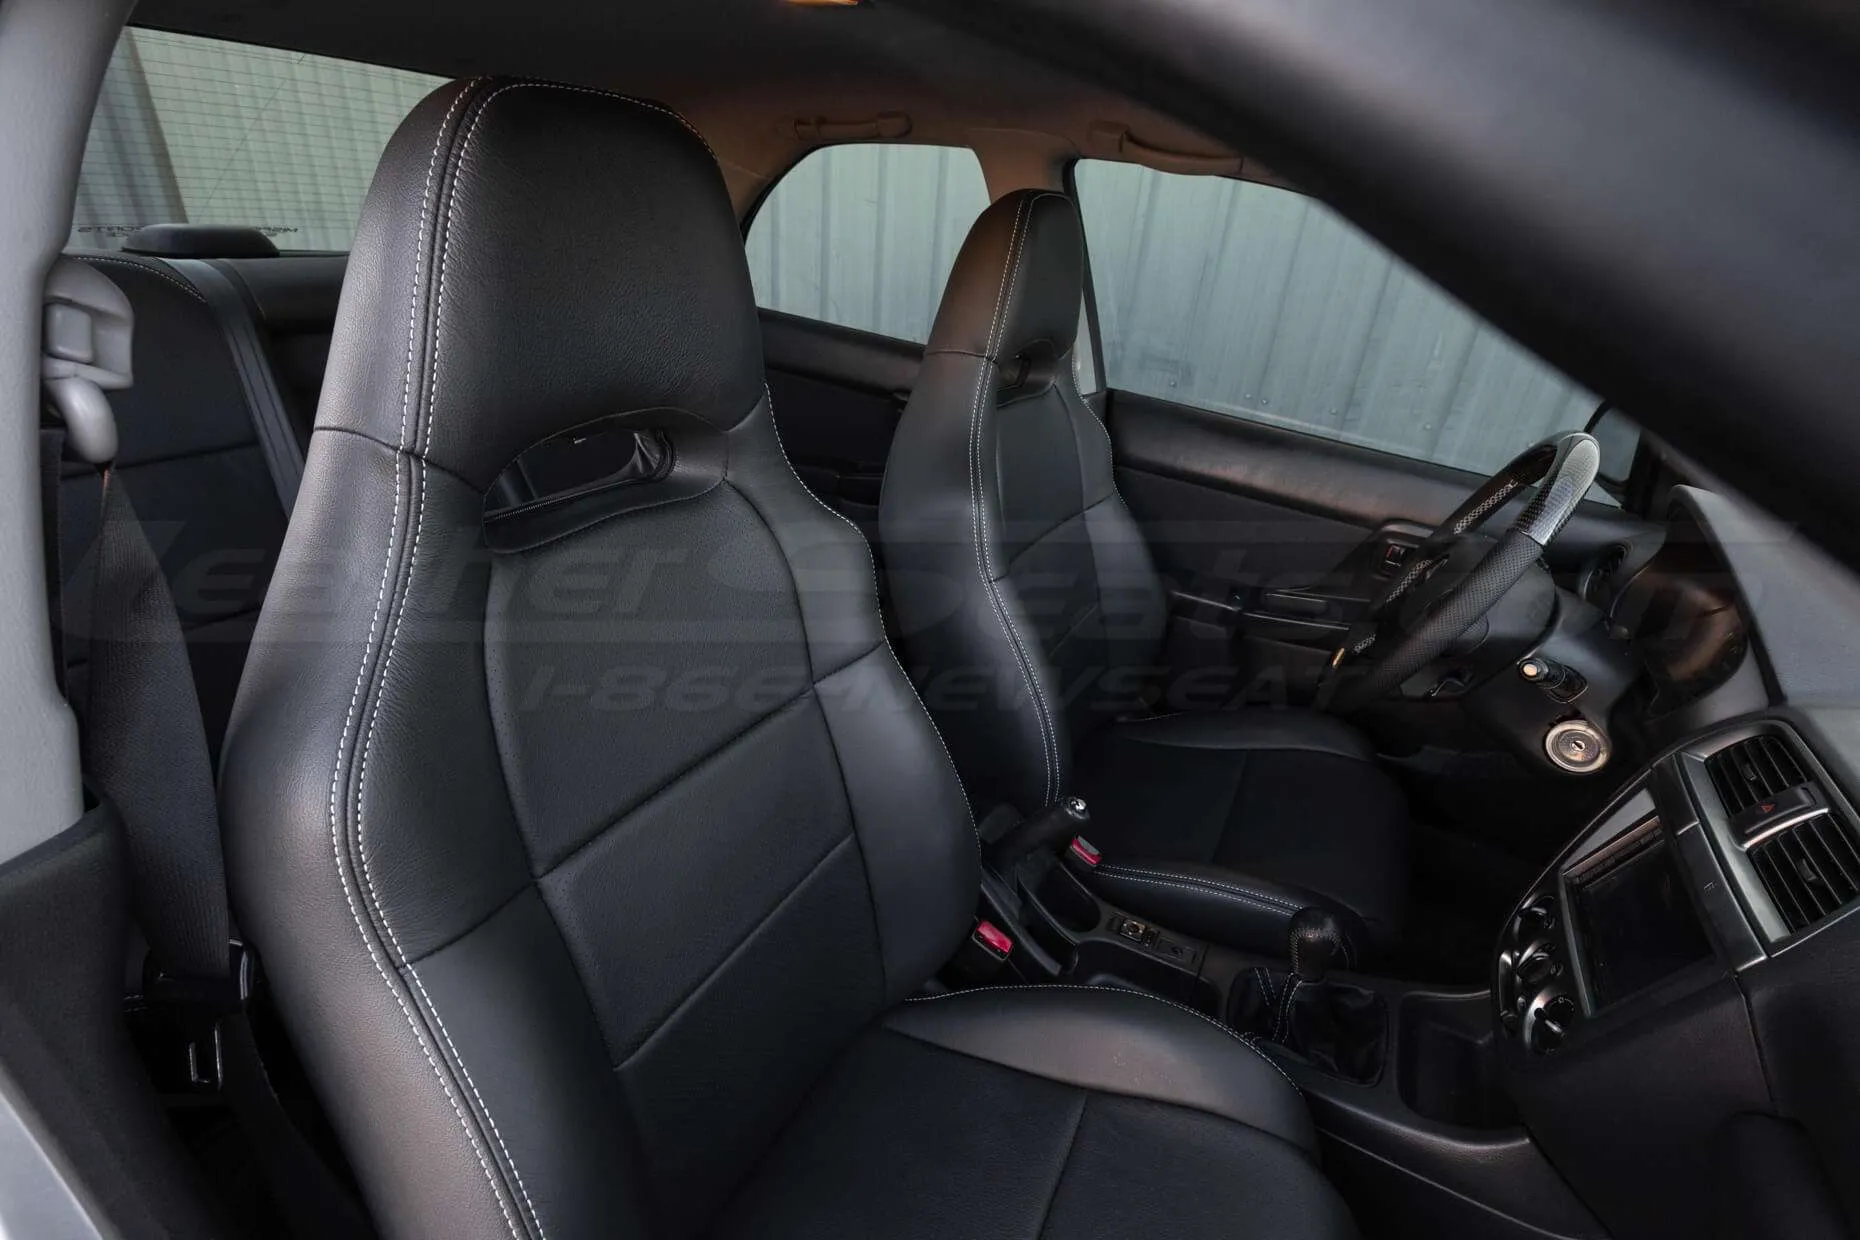 Subaru Impreza WRX Dark Graphite Leather Seats - Front interior from passenger sid e